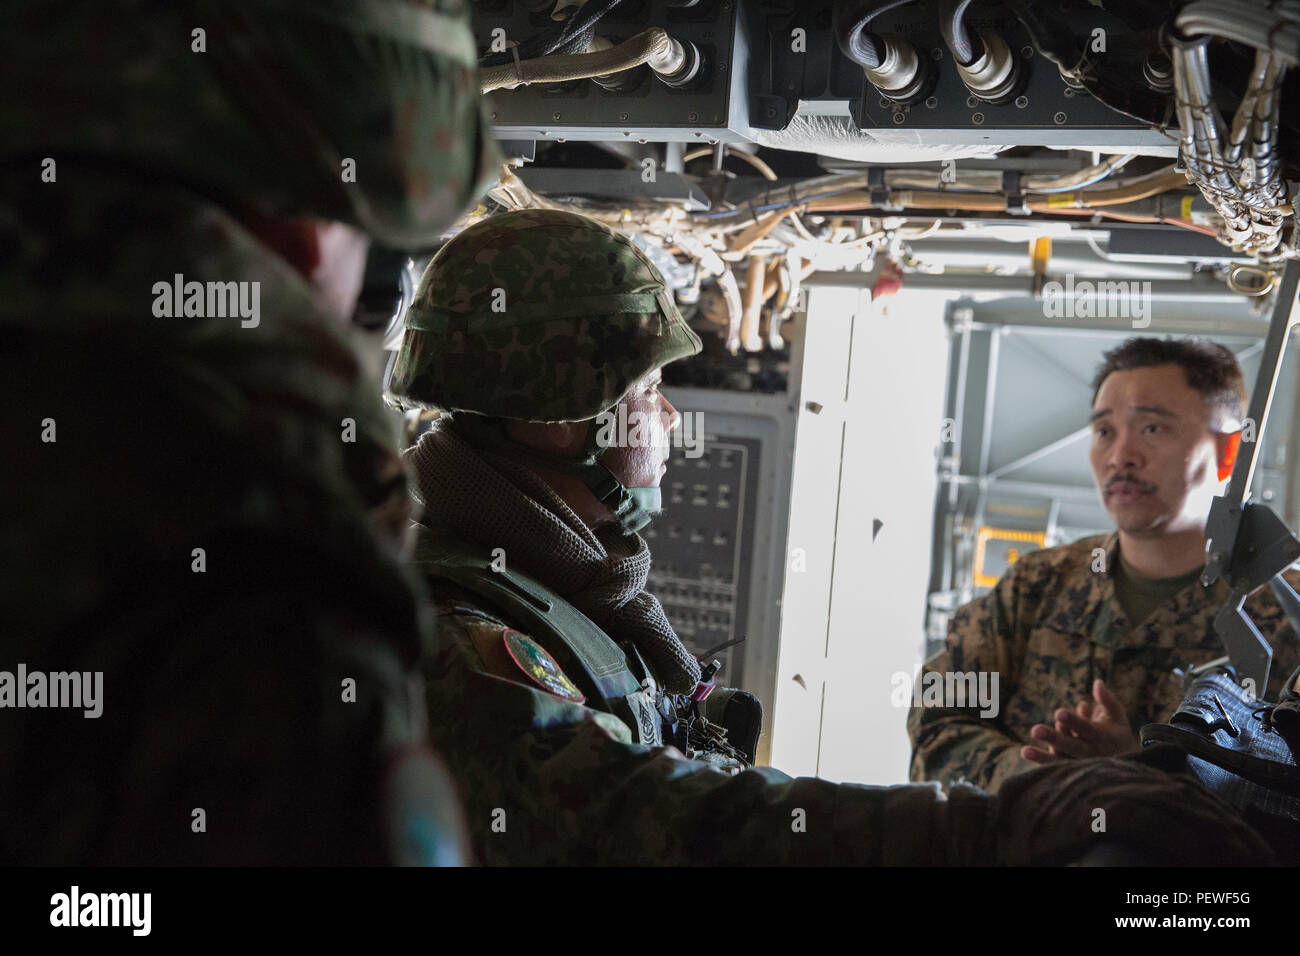 Jefe Superior de la Marina de los Estados Unidos Jesús Salabao, 11ª Unidad Expedicionaria de los Infantes de Marina, senior alistó líder y planificador de médico adjunto, analiza cómo la Marina de los EE.UU. establece el tratamiento de los pacientes y la colocación dentro de la aeronave durante el vuelo en una MV-22 Osprey, con el sargento. Arata gral Hamaguchi, Tierra de Fuerza de Autodefensa de Japón (JGSDF), regimiento de infantería del ejército occidental, durante una gira de una MV-22 Osprey en Marine Corps Air Station Miramar, California, 4 de febrero de 2016. La visita se centró en el tratamiento y transporte de un paciente con el MV-22 Osprey los activos y se celebró durante el ejercicio anual de puño de hierro, b Foto de stock